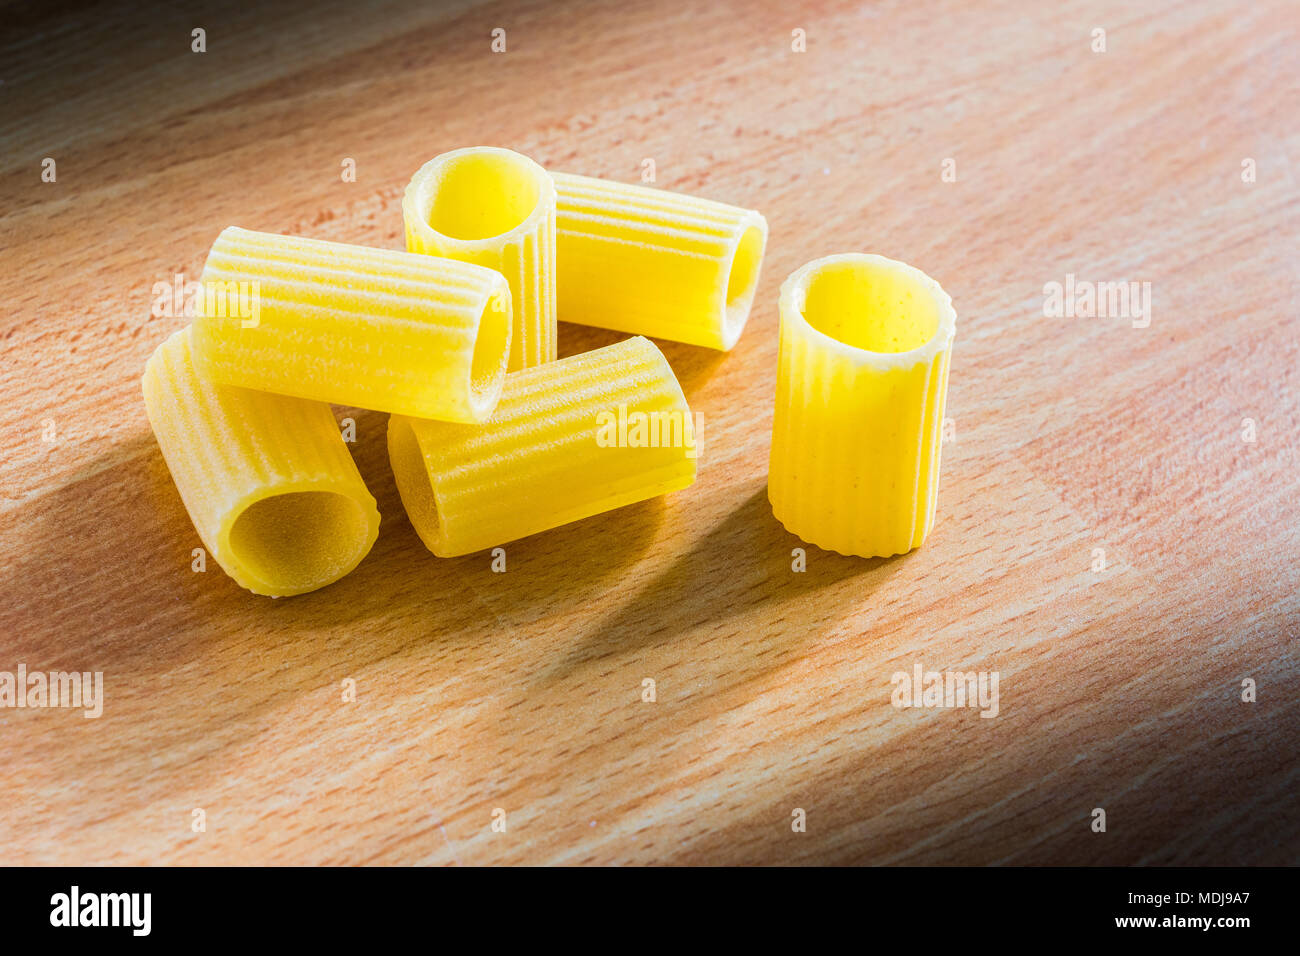 Italian pasta (mezze maniche) on a wooden table Stock Photo